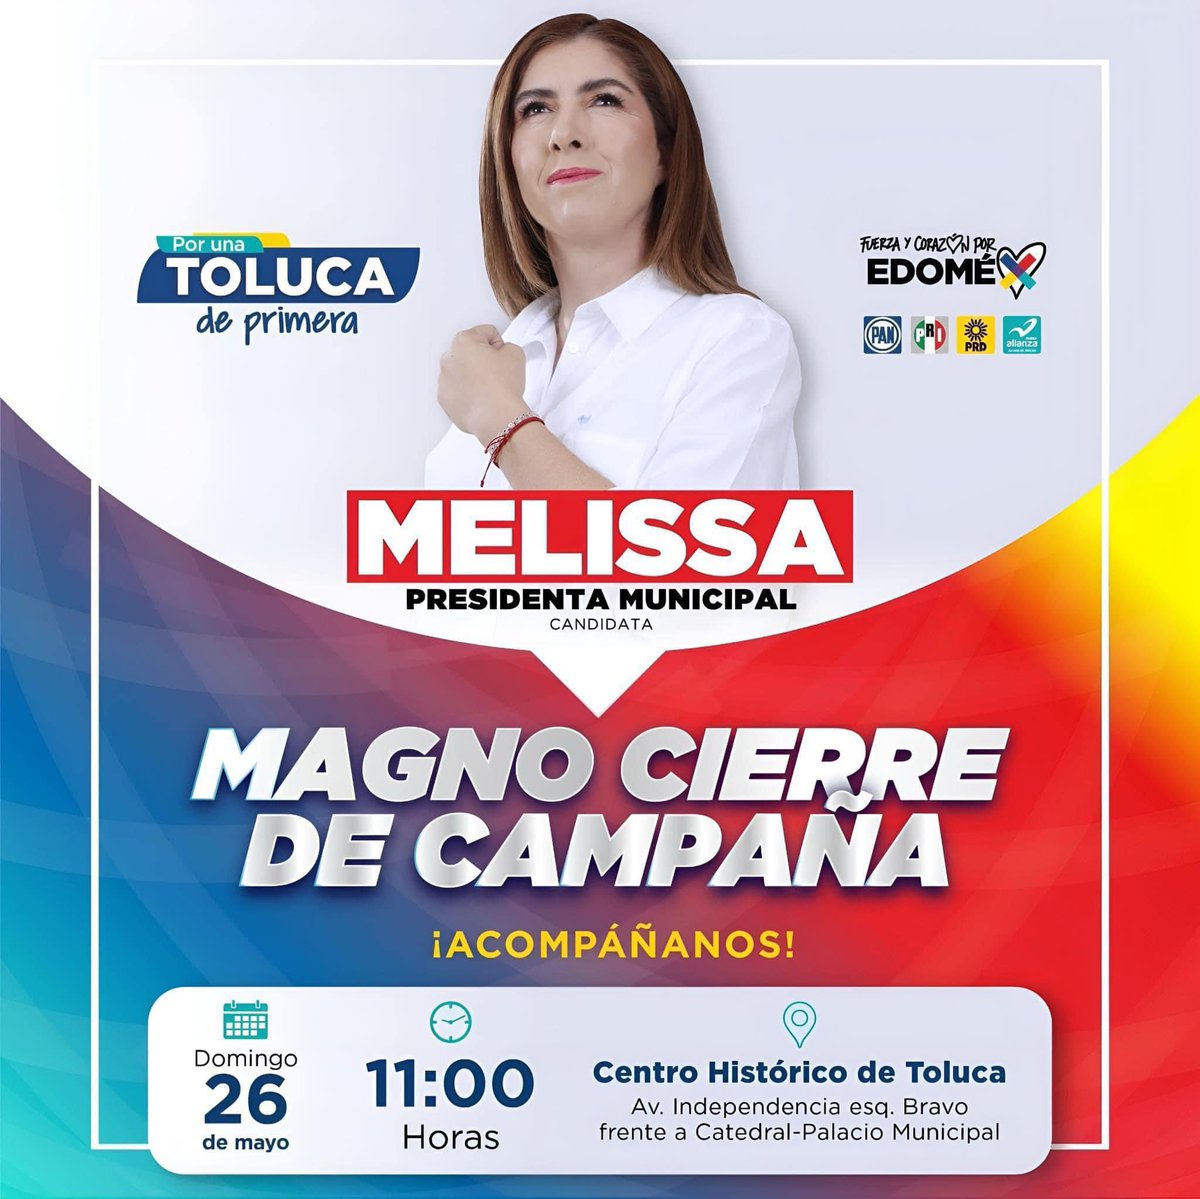 ¡Hoy es el gran día! Te esperamos en el cierre de campaña de nuestra próxima presidenta municipal, @melissavargasmx. Ven y celebra con nosotros en el Centro Histórico de Toluca a las 11:00 AM. ¡Vamos a rescatar juntos a #TolucaLaBella! Nos vemos en unos minutos.